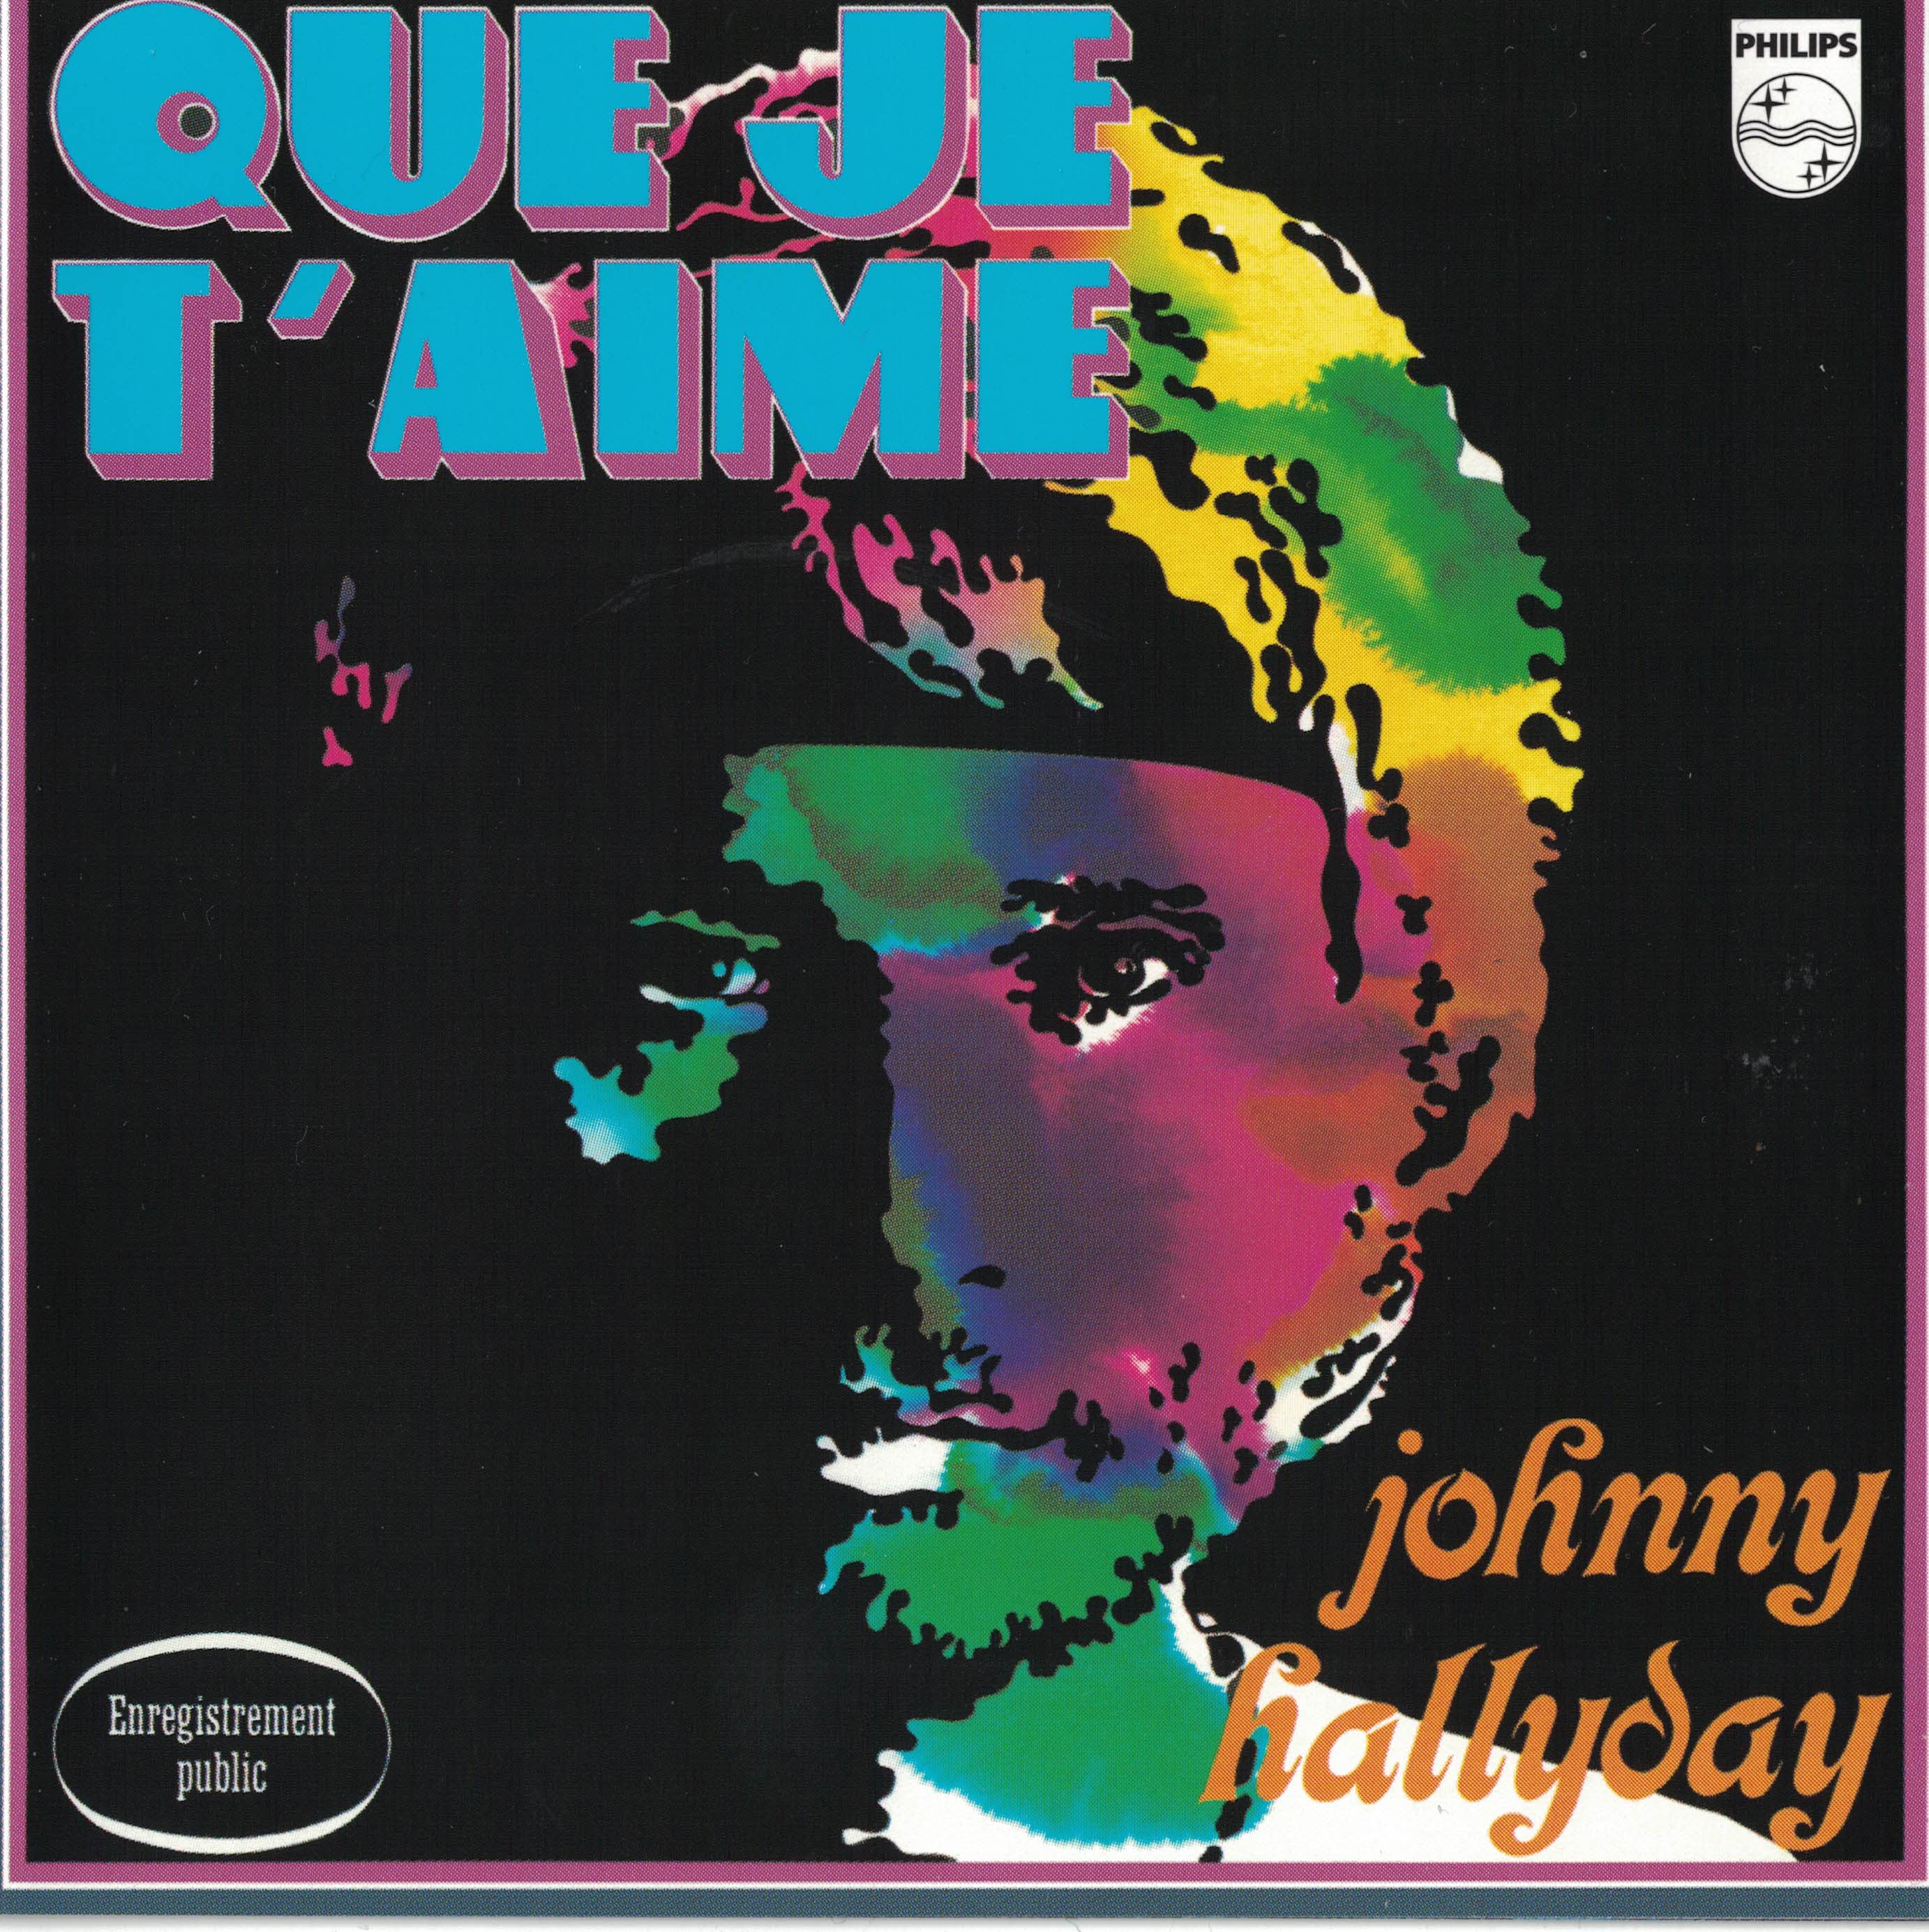 Johnny hallyday - Que je t'aime (Palais des sports 1969)